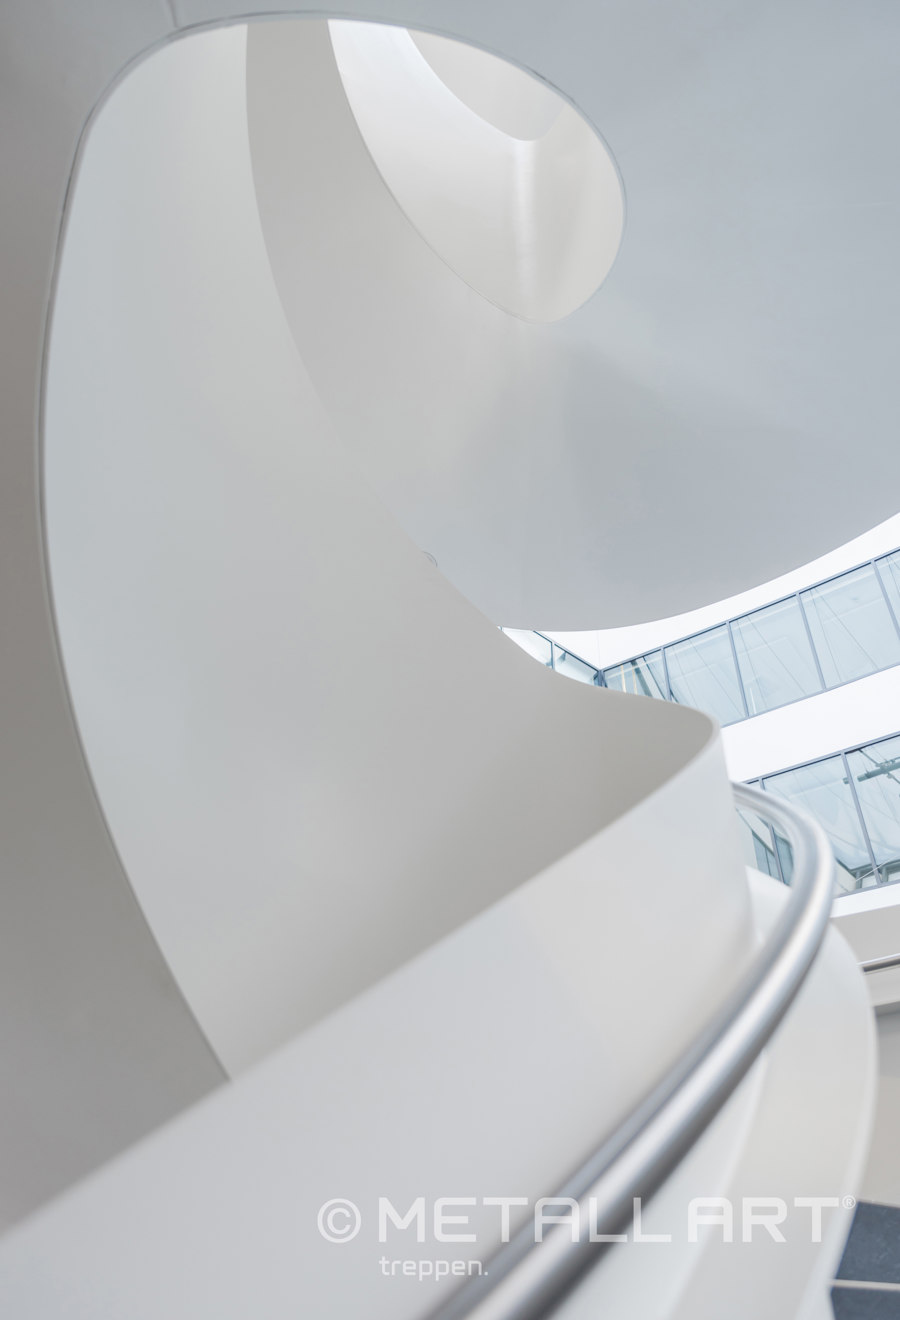 Eindrucksvolle Designtreppe im Lilienthalhaus Braunschweig di MetallArt Treppen | Riferimenti di produttori